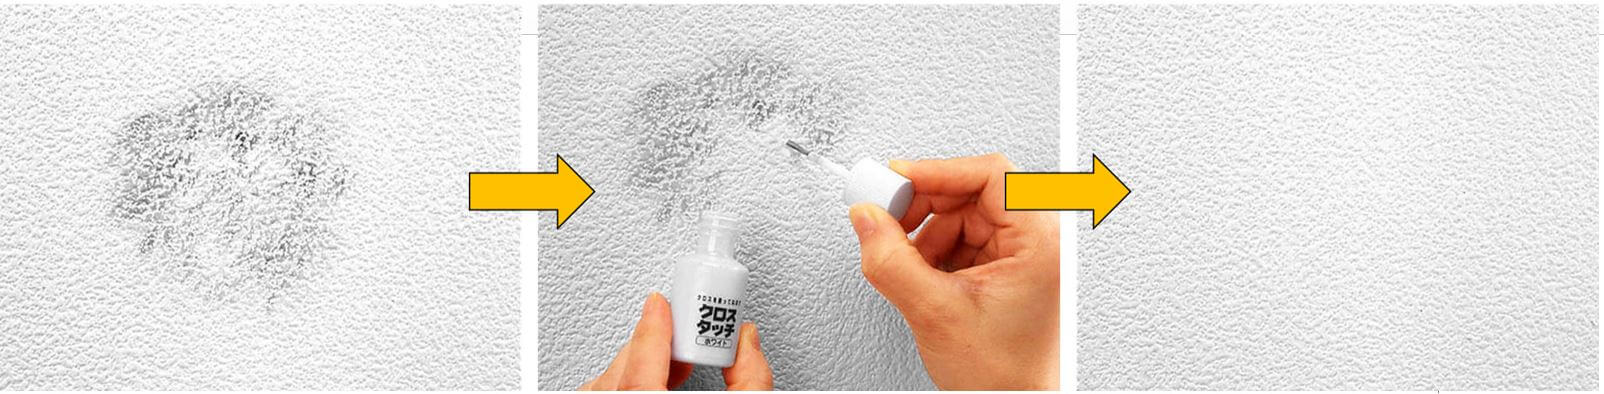 実践レポ 壁紙 クロス汚れを白く塗って隠した方法 ベランダゴーヤ研究所